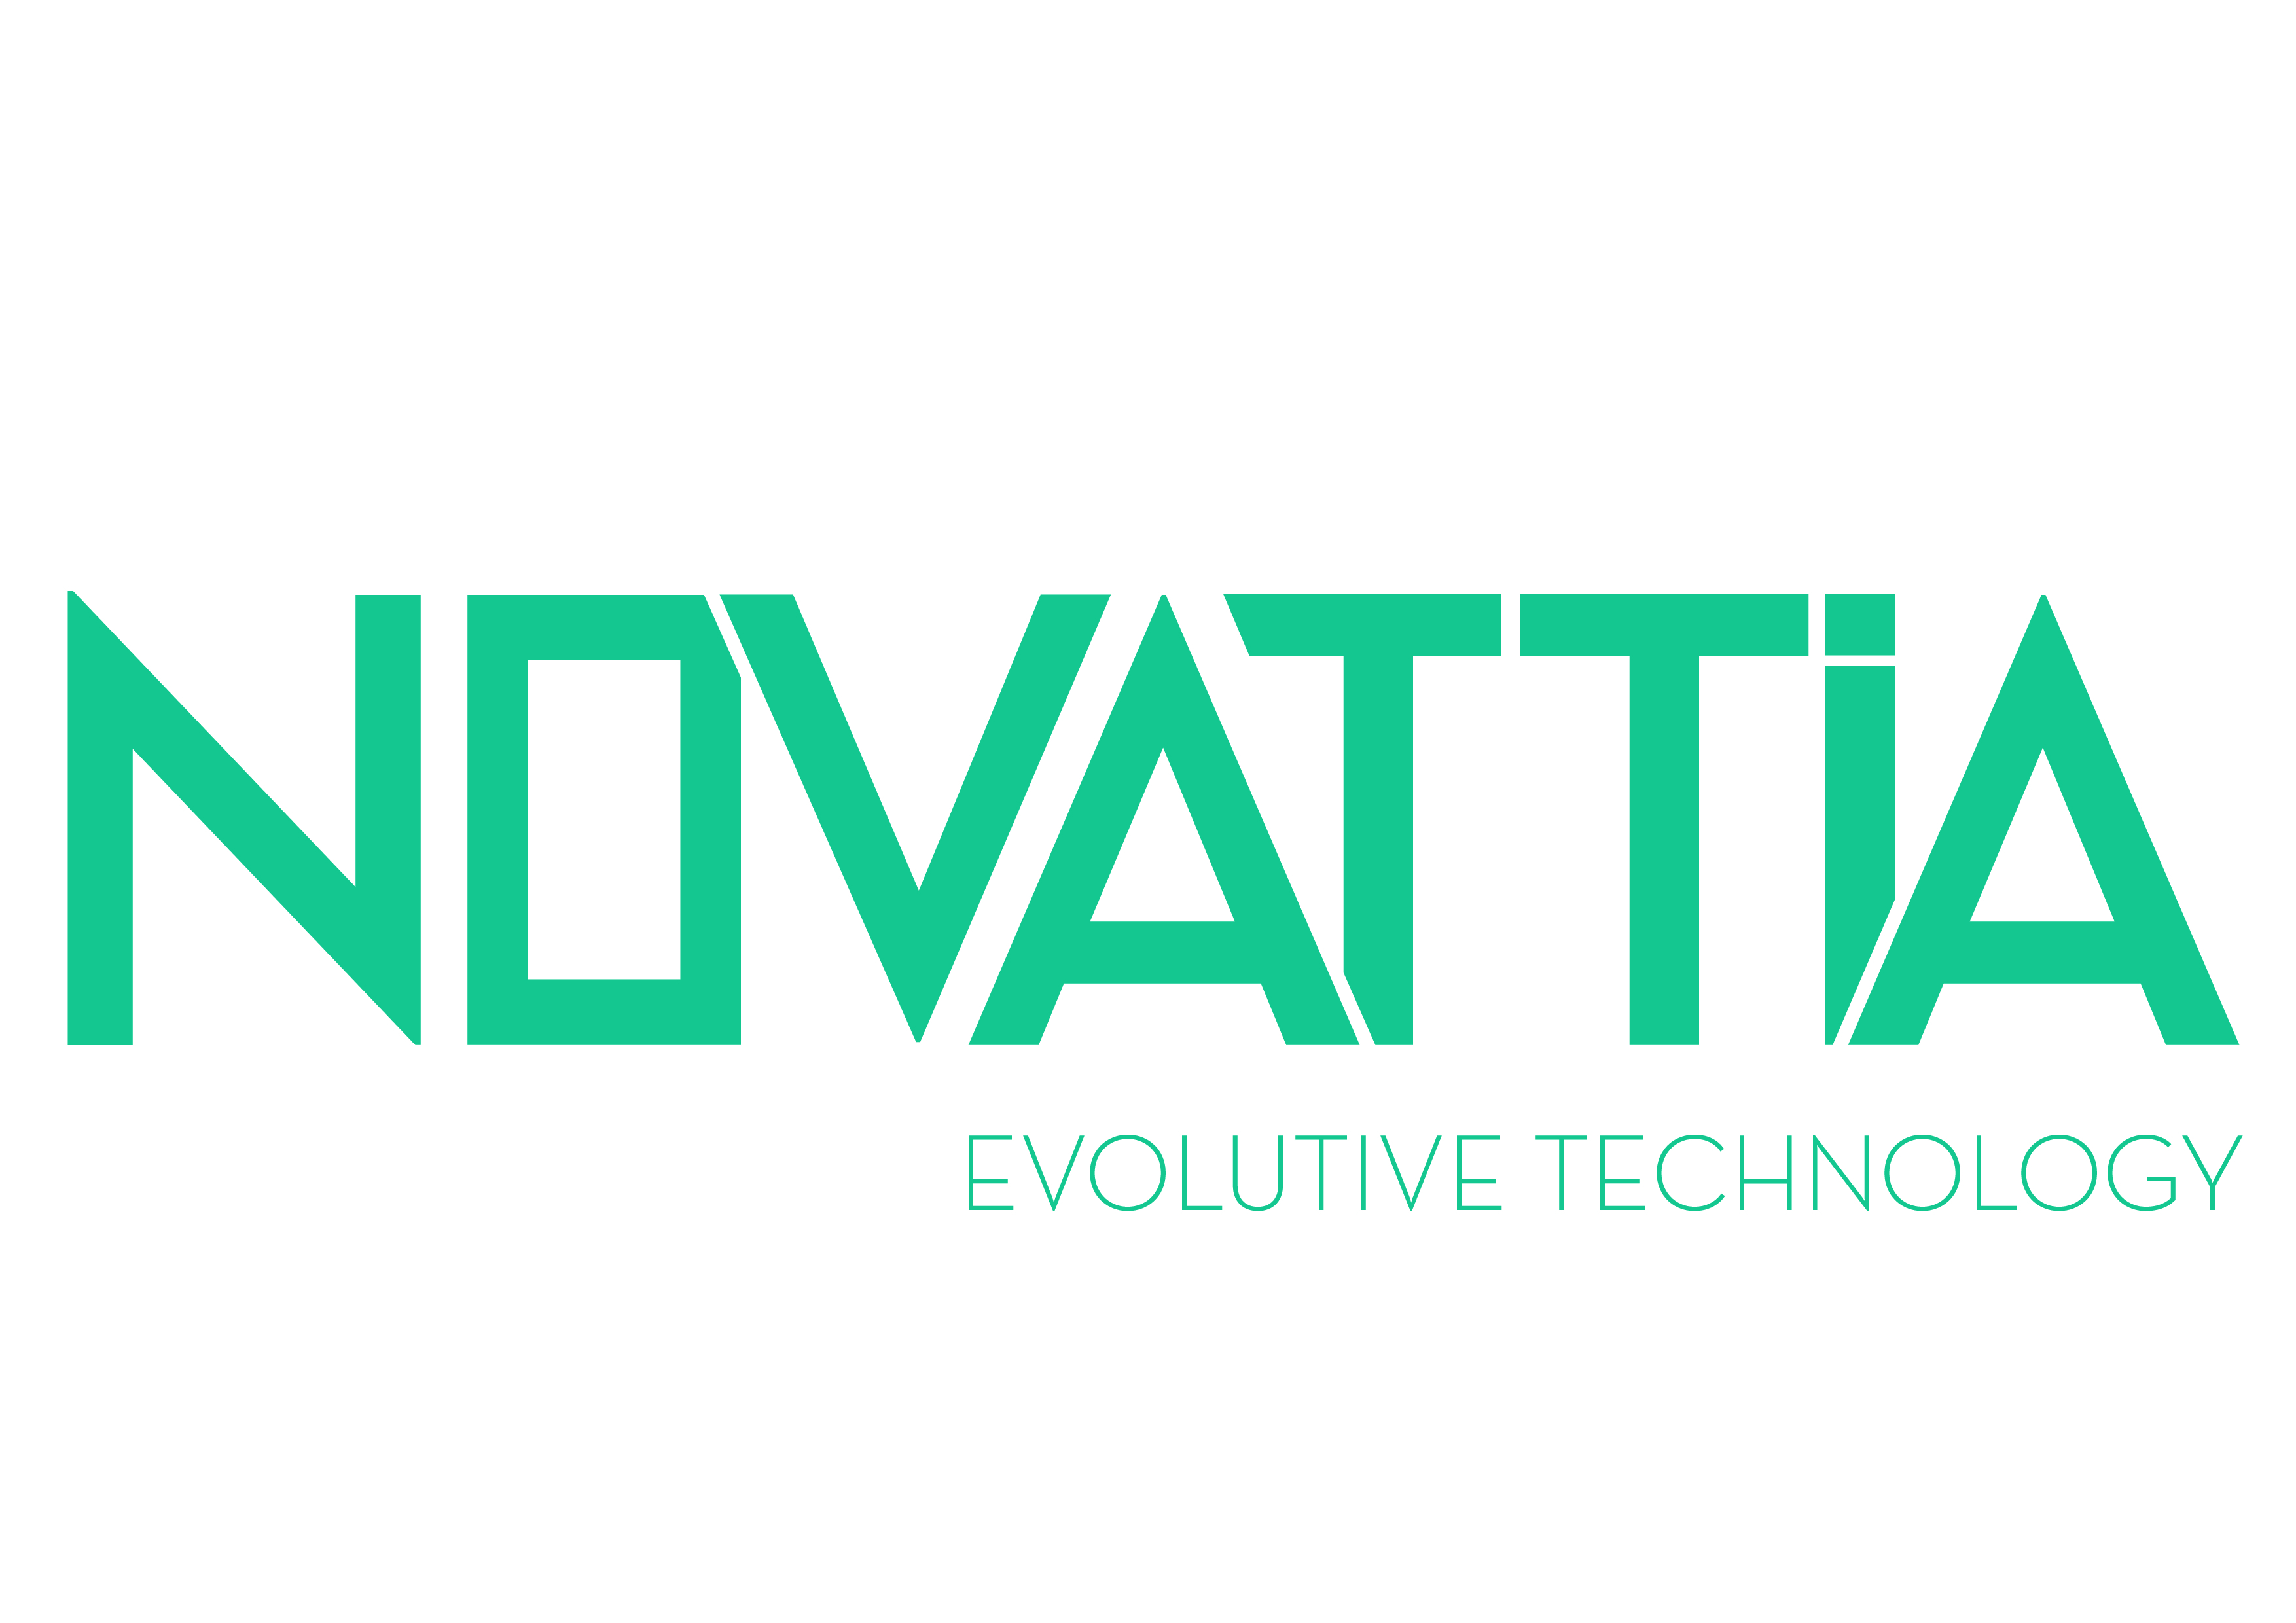 Adquisición de la compañía Novattia